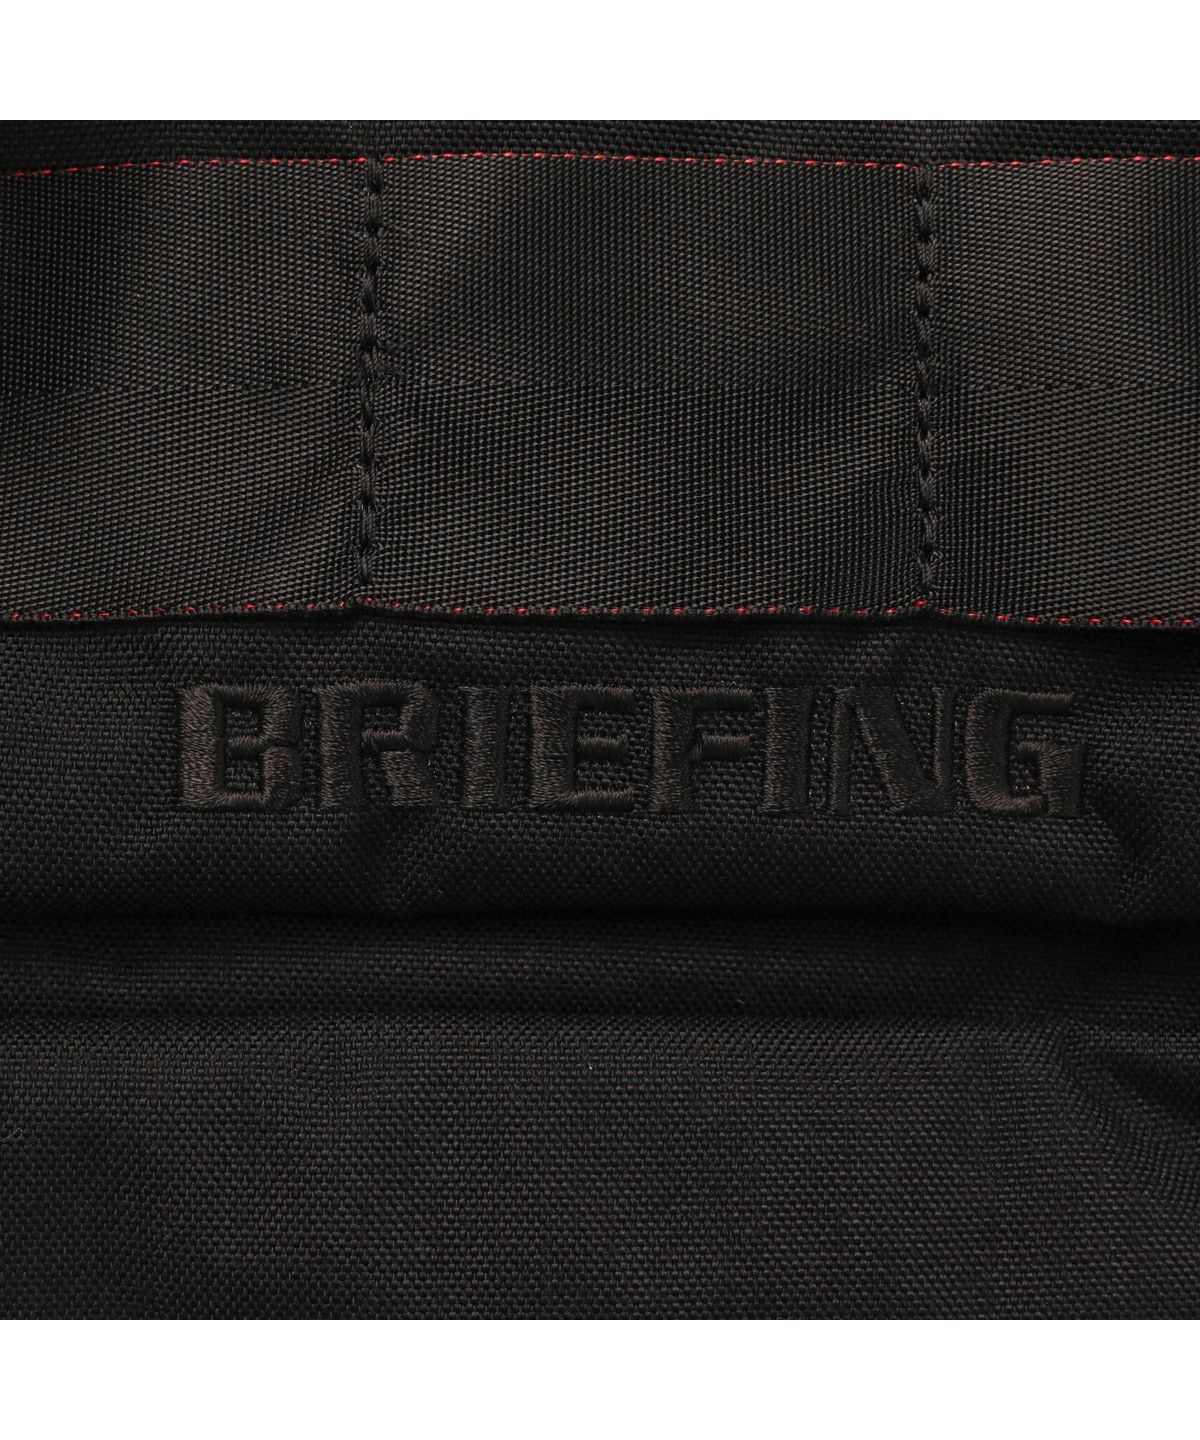 【日本正規品】ブリーフィング ボディバッグ BRIEFING FREIGHTER SERIES FREIGHTER RAMBLER 横型  BRA221L08